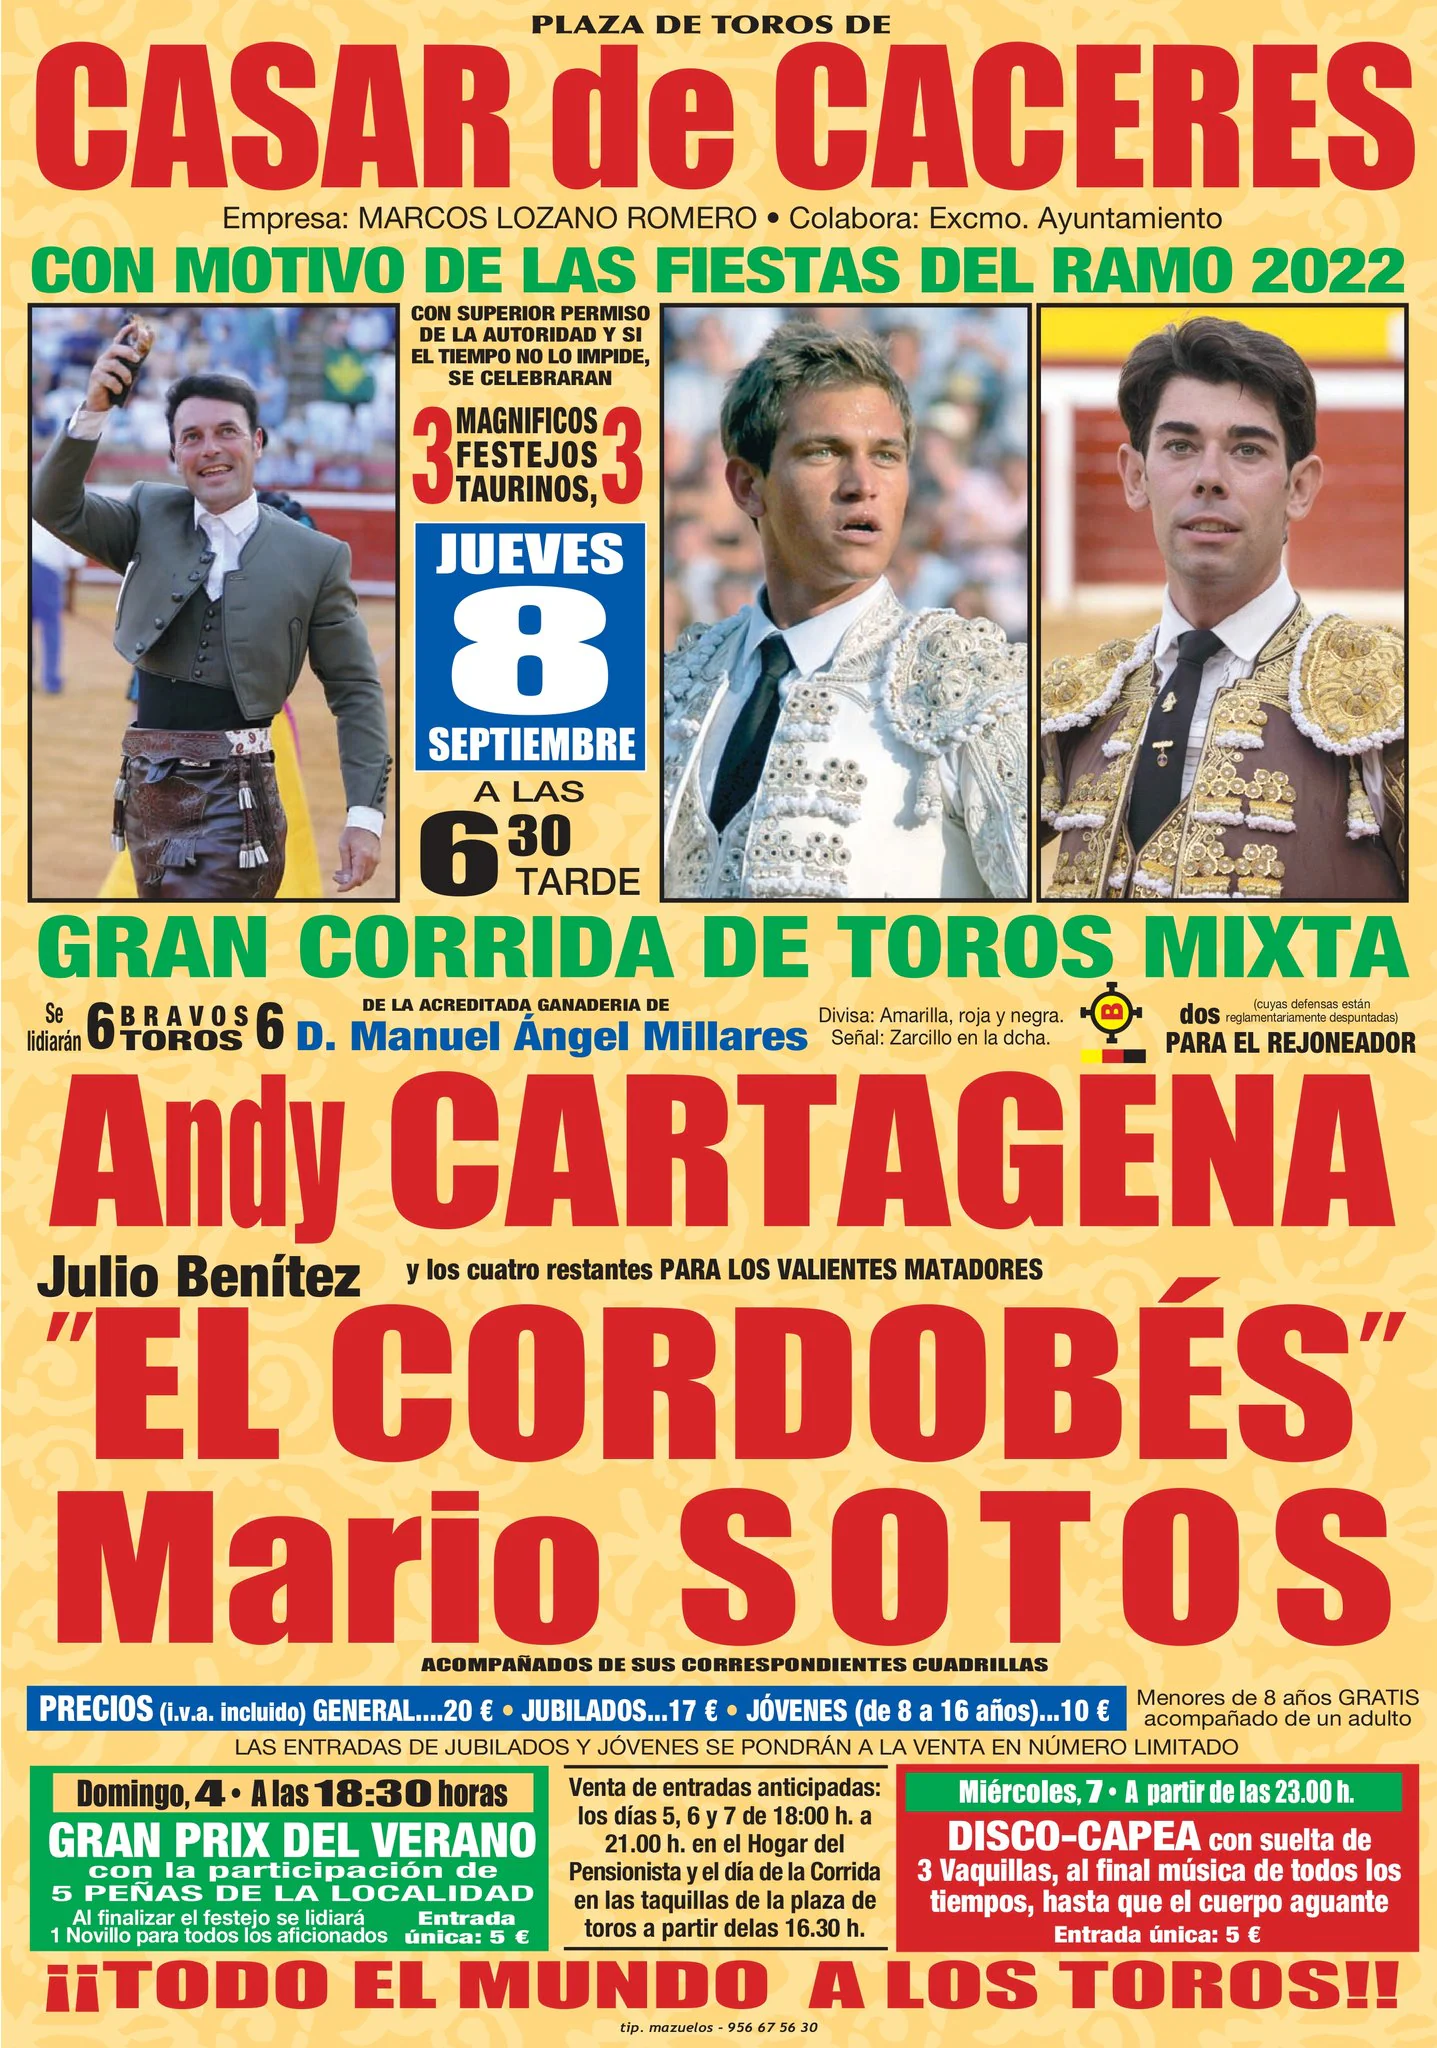 Andy Cartagena, Julio Benítez 'El Cordobés' y Mario Sotos participarán en la corrida de toros mixta del Día de Extremadura